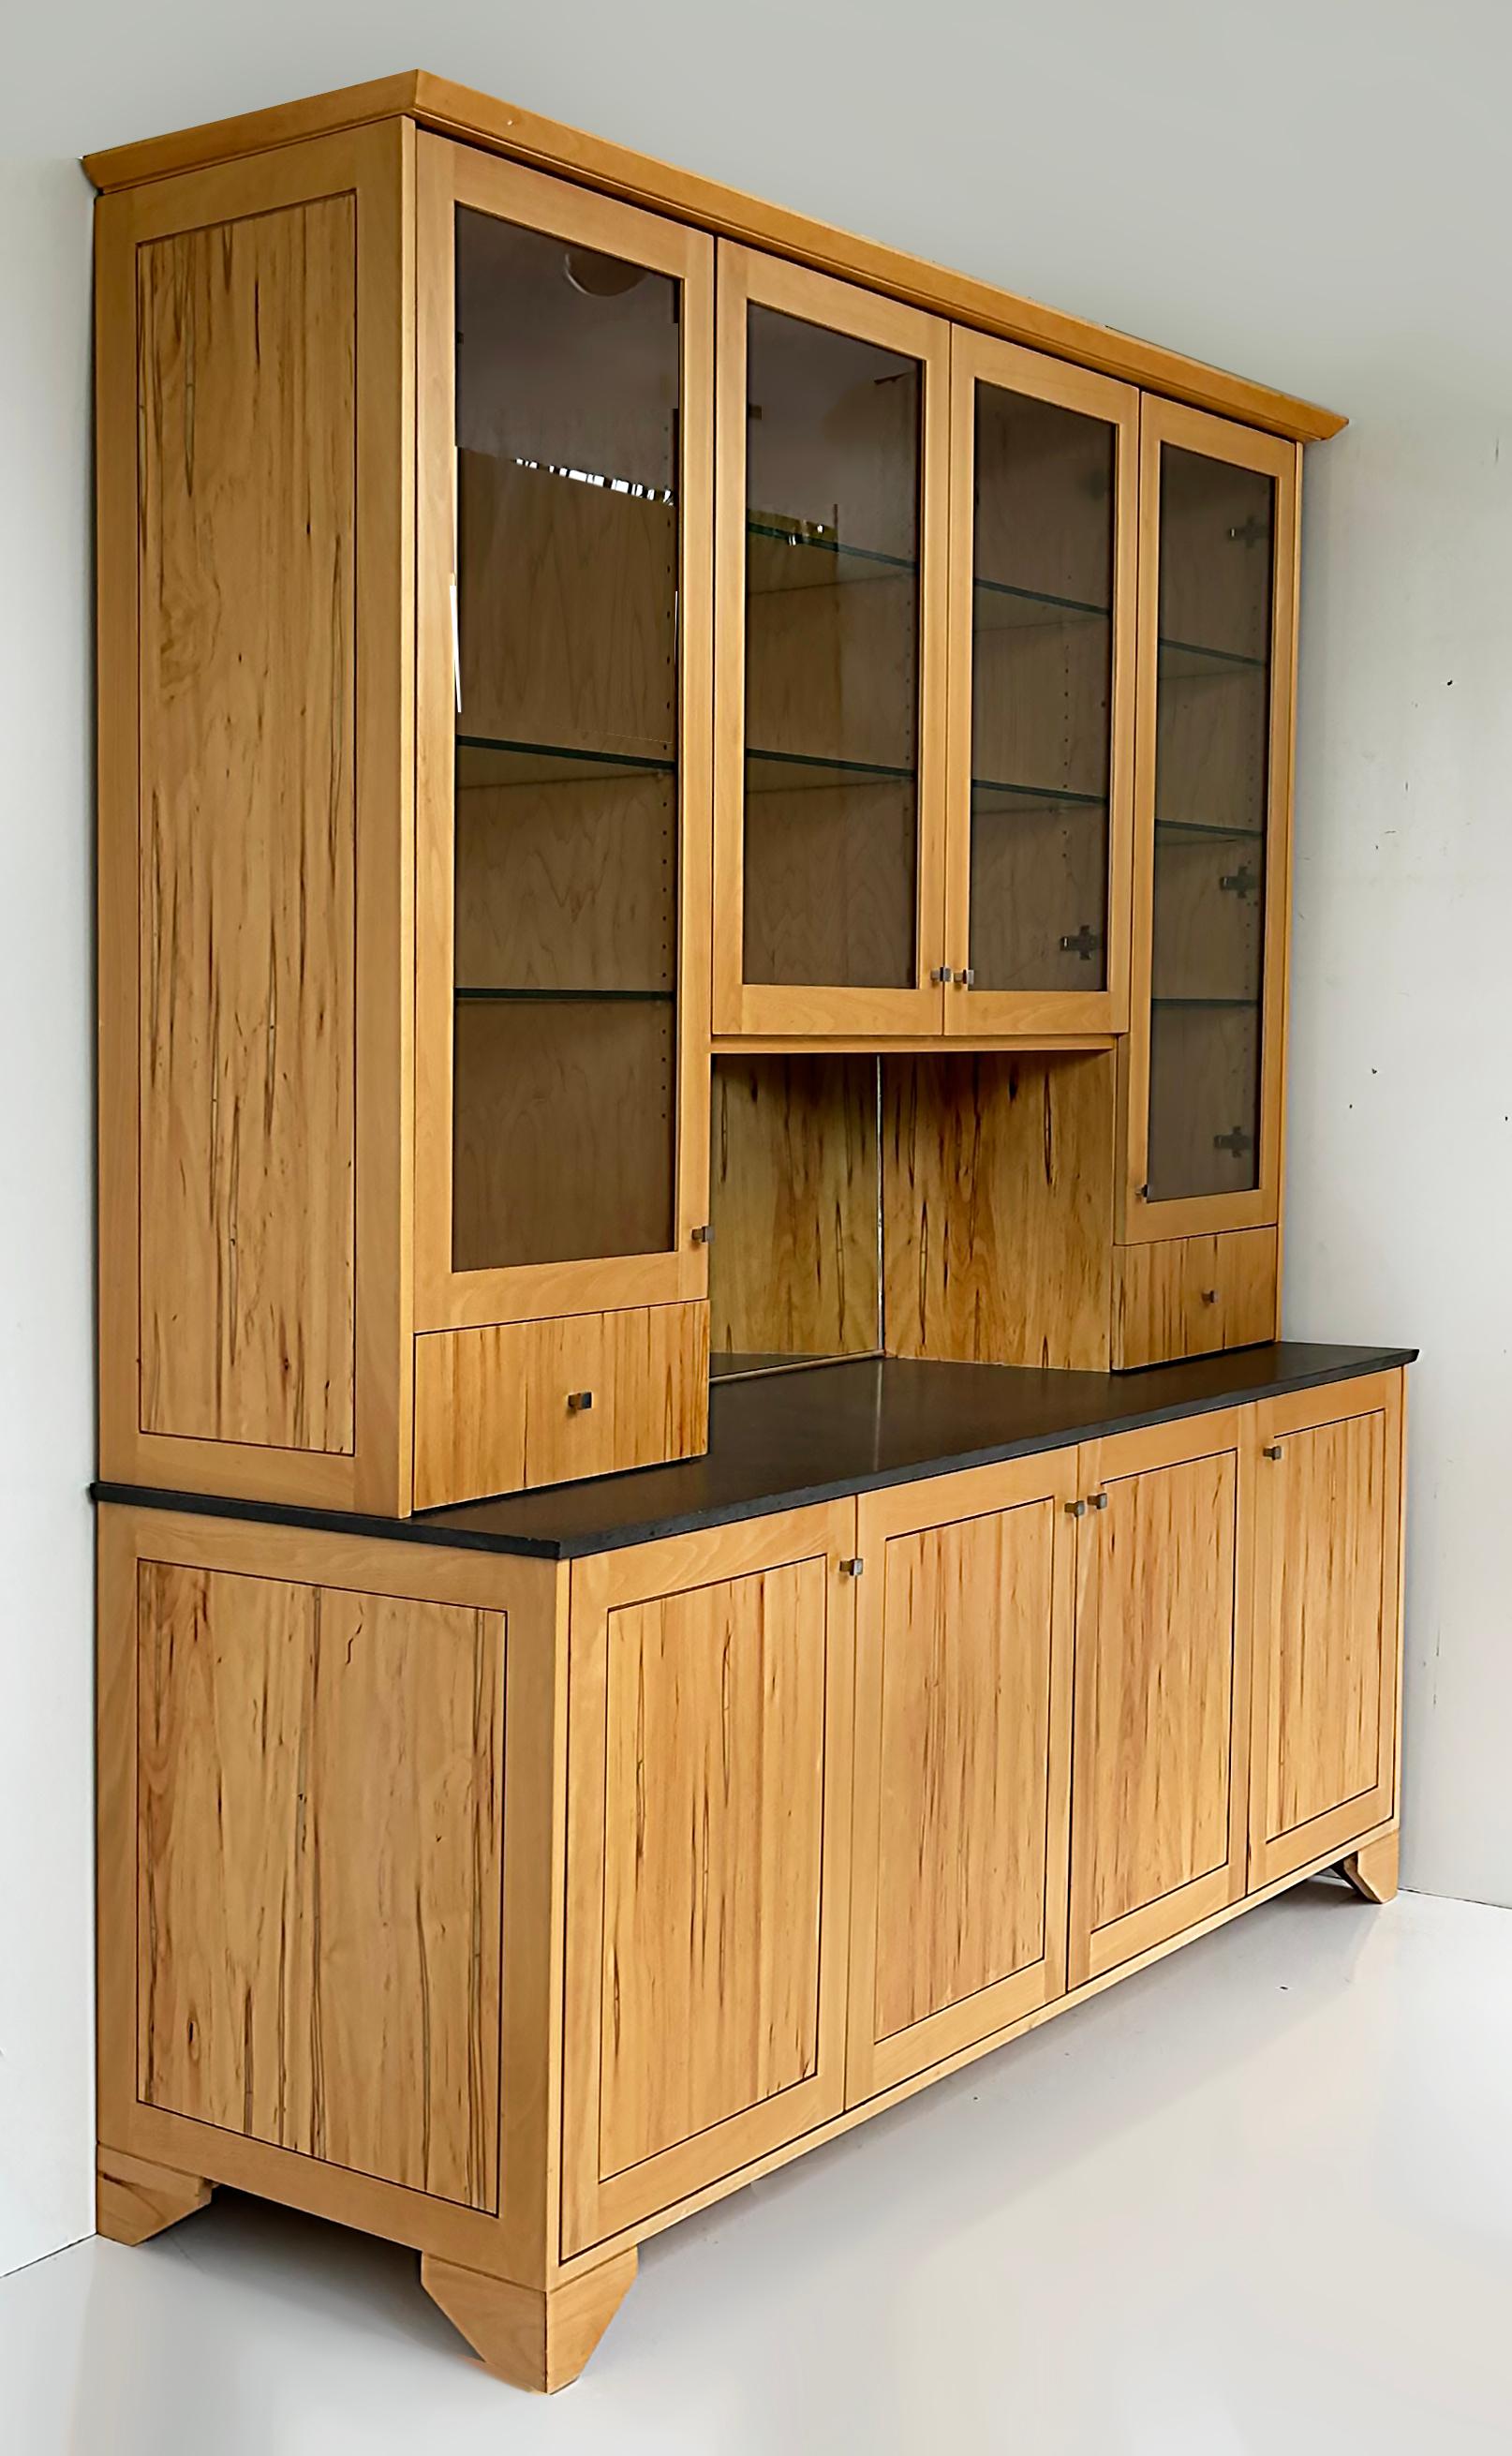 Ray Pirello Studio Cabinet sur mesure en bois d'érable et granit 

Nous proposons à la vente un meuble bar à façade brisée fabriqué sur mesure avec une crédence inférieure en érable ambrosia de première qualité, avec une finition en polyuréthane